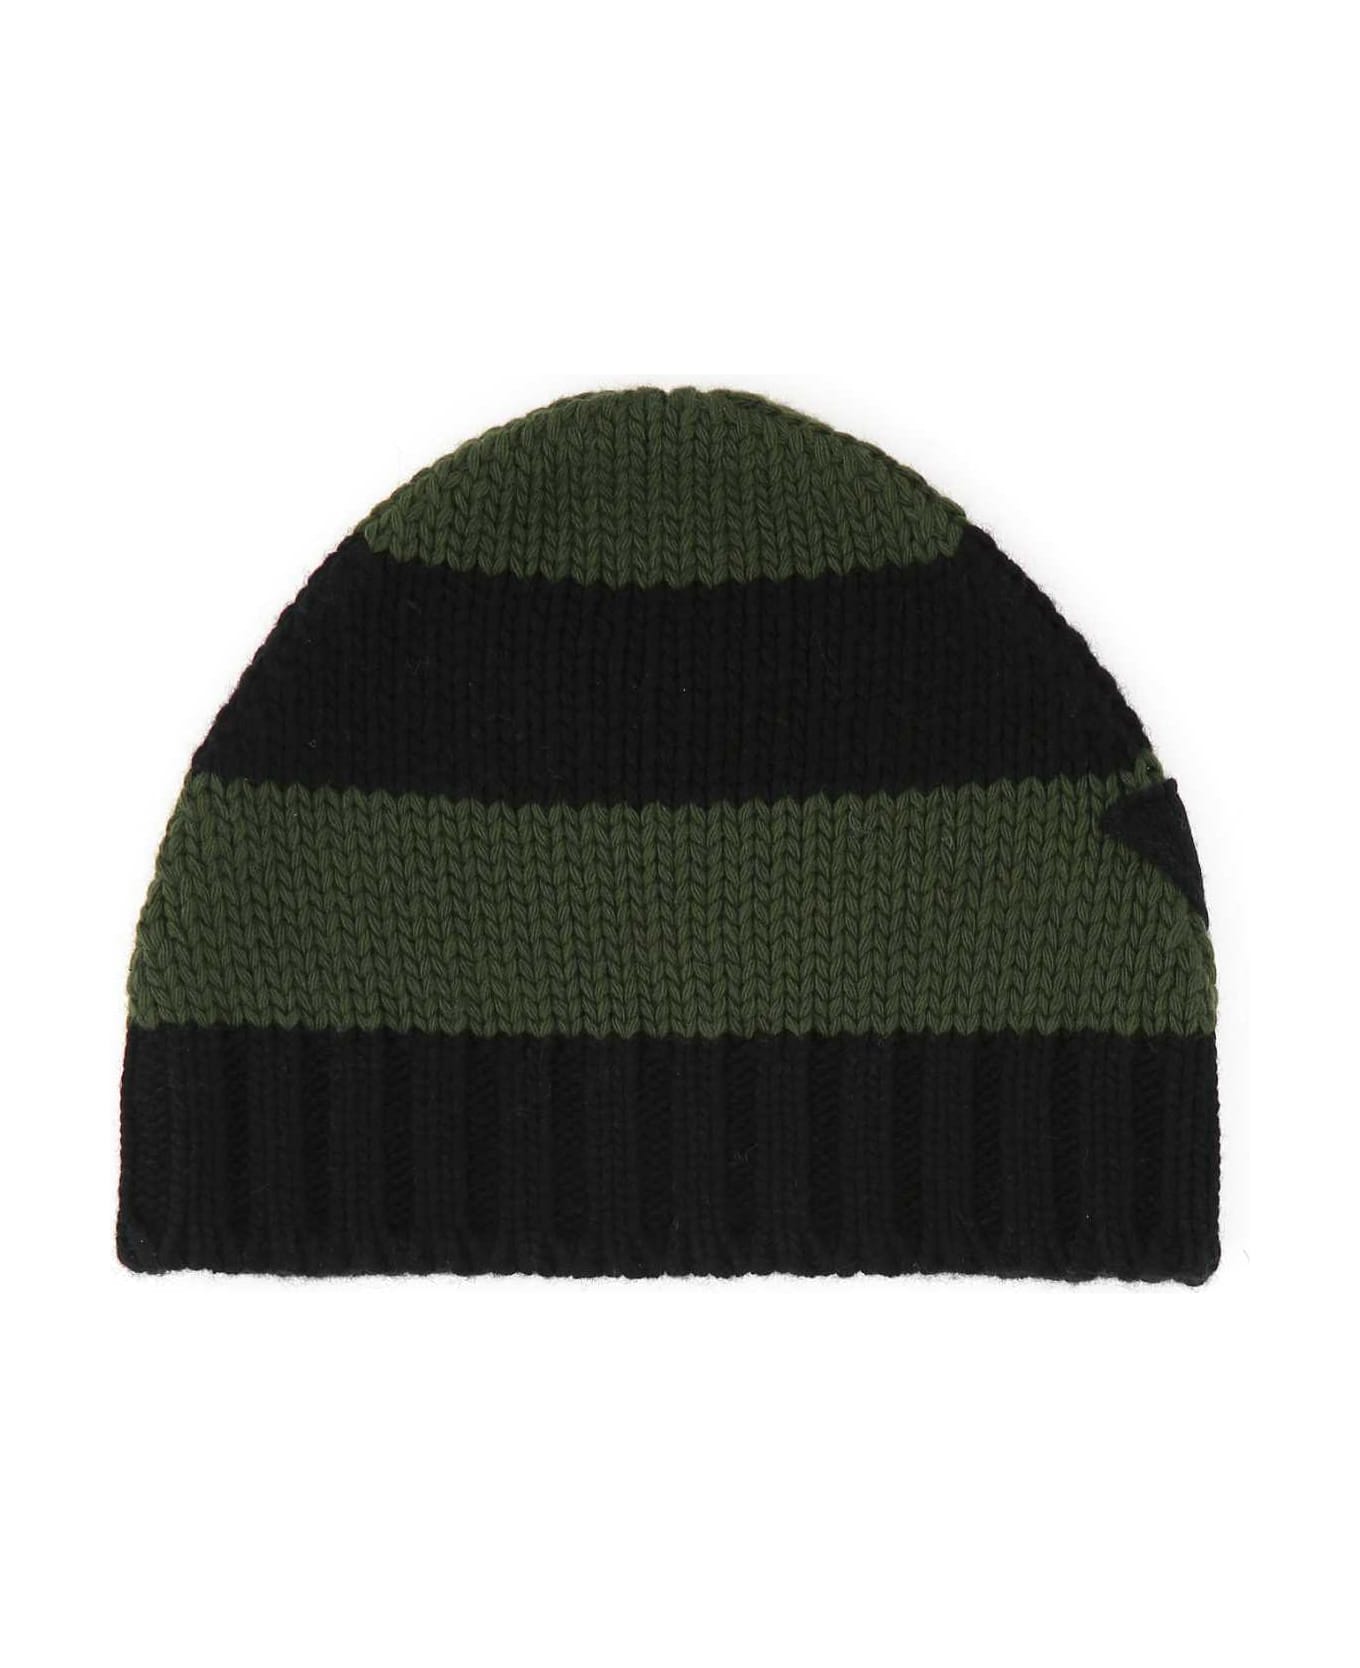 Prada Embroidered Wool Blend Beanie Hat - F0Q24 帽子